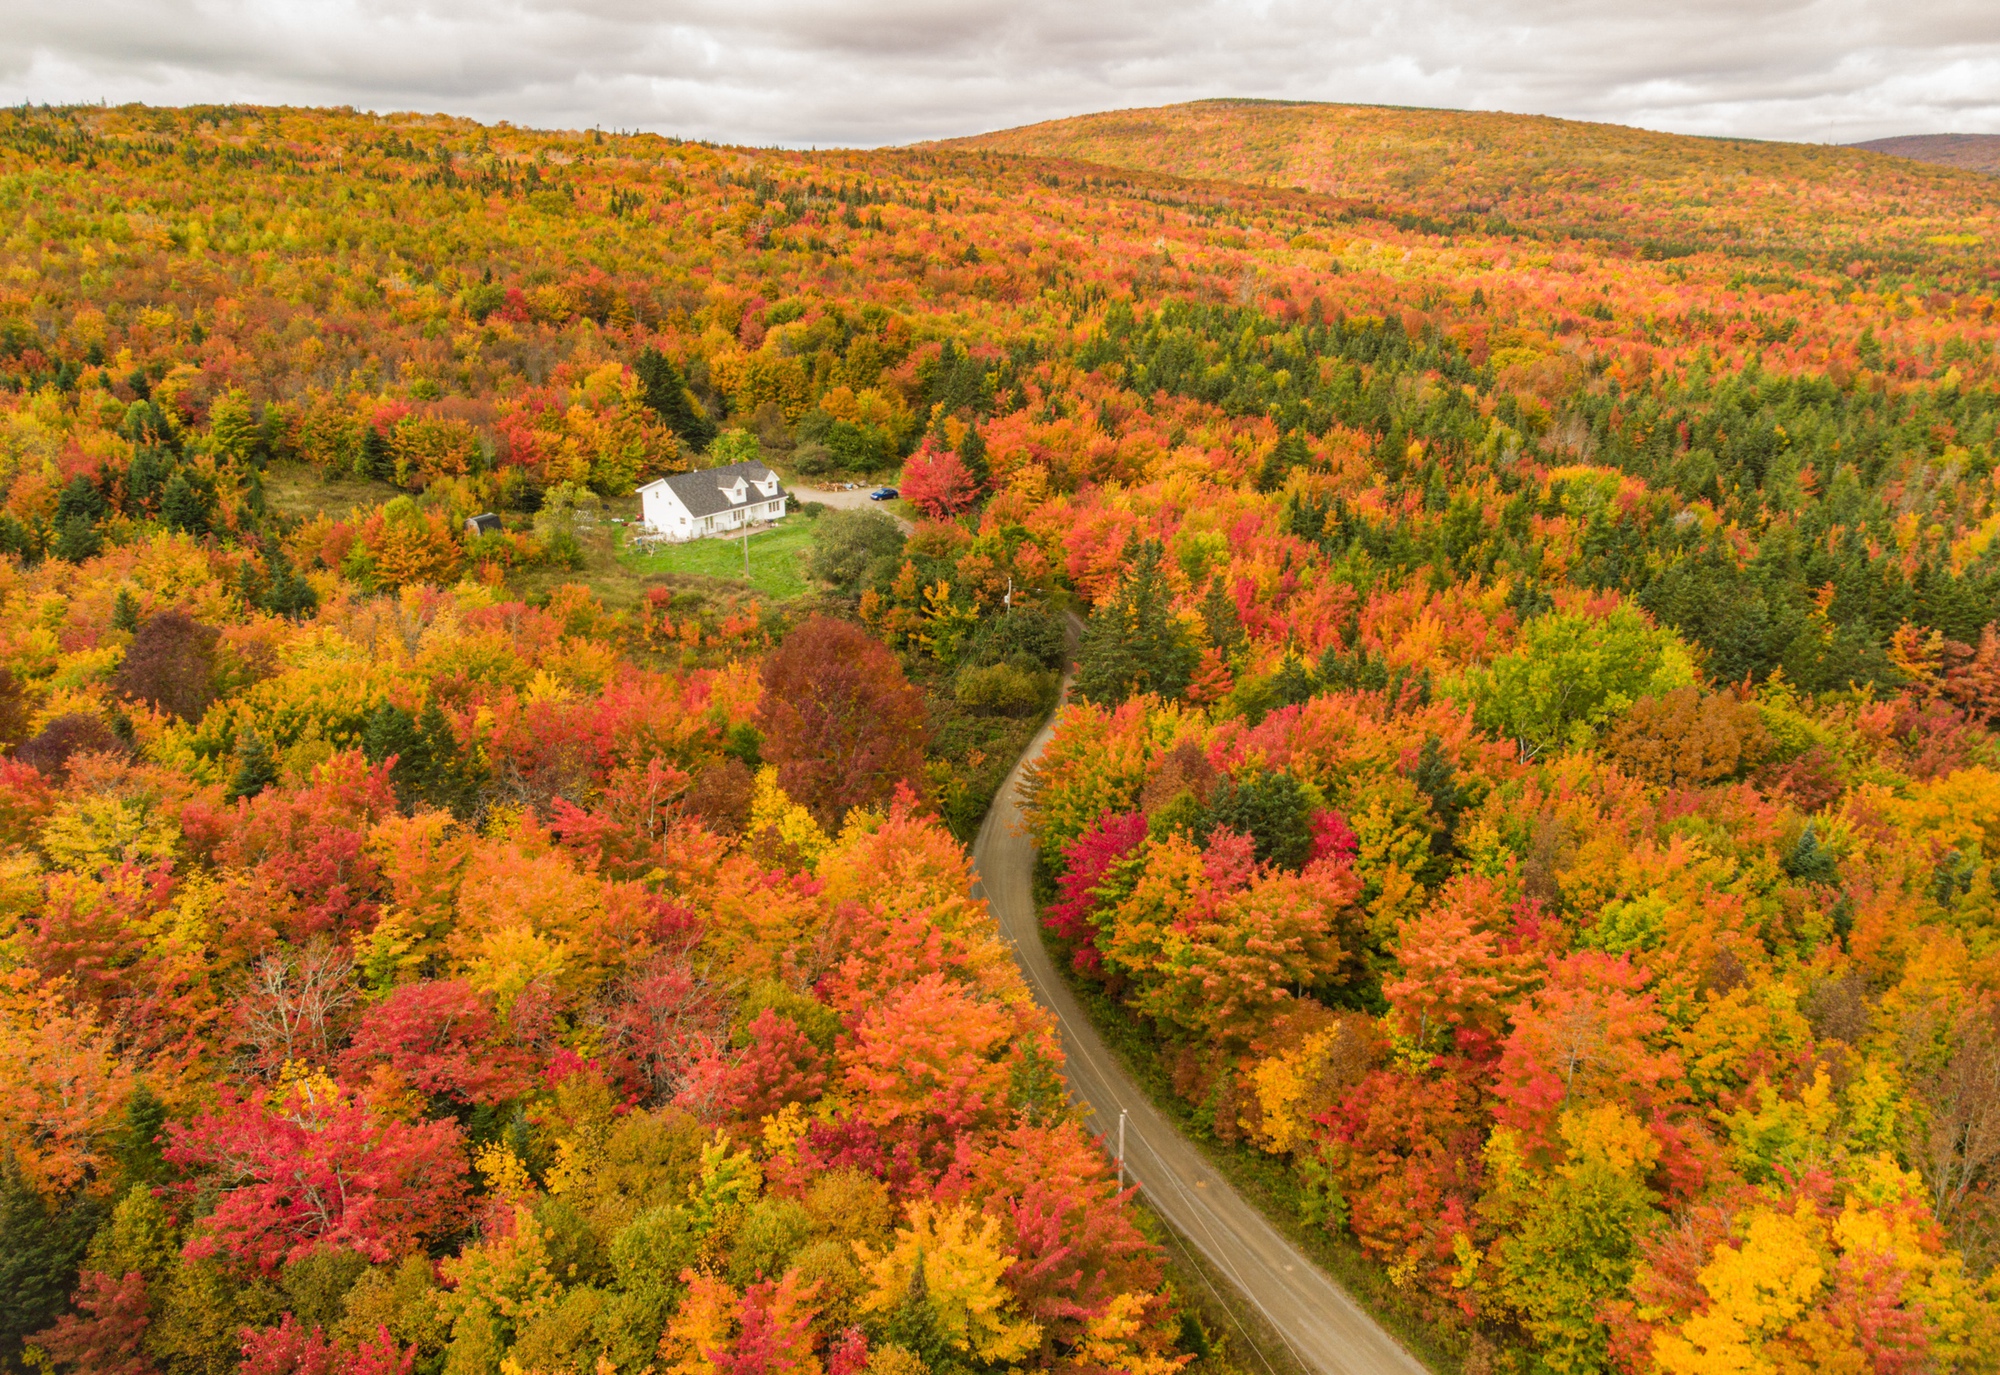 Khám phá mùa thu rực rỡ ở nơi hình thành nên đất nước Canada - Ảnh 5.